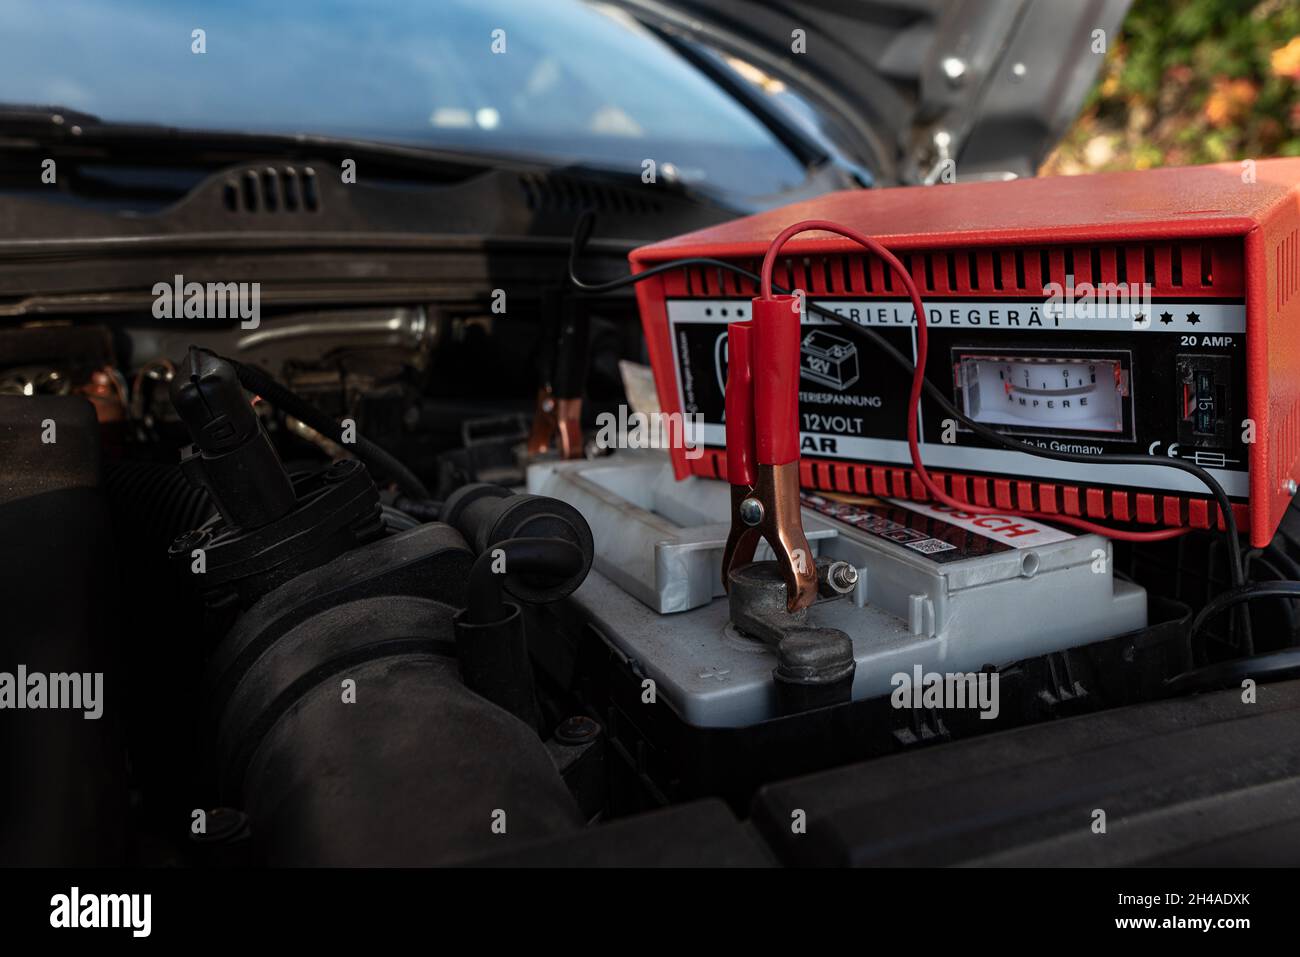 Una abrazadera roja fijada a la batería del coche para su recarga, Dinamarca, 1 de noviembre de 2021 Foto de stock